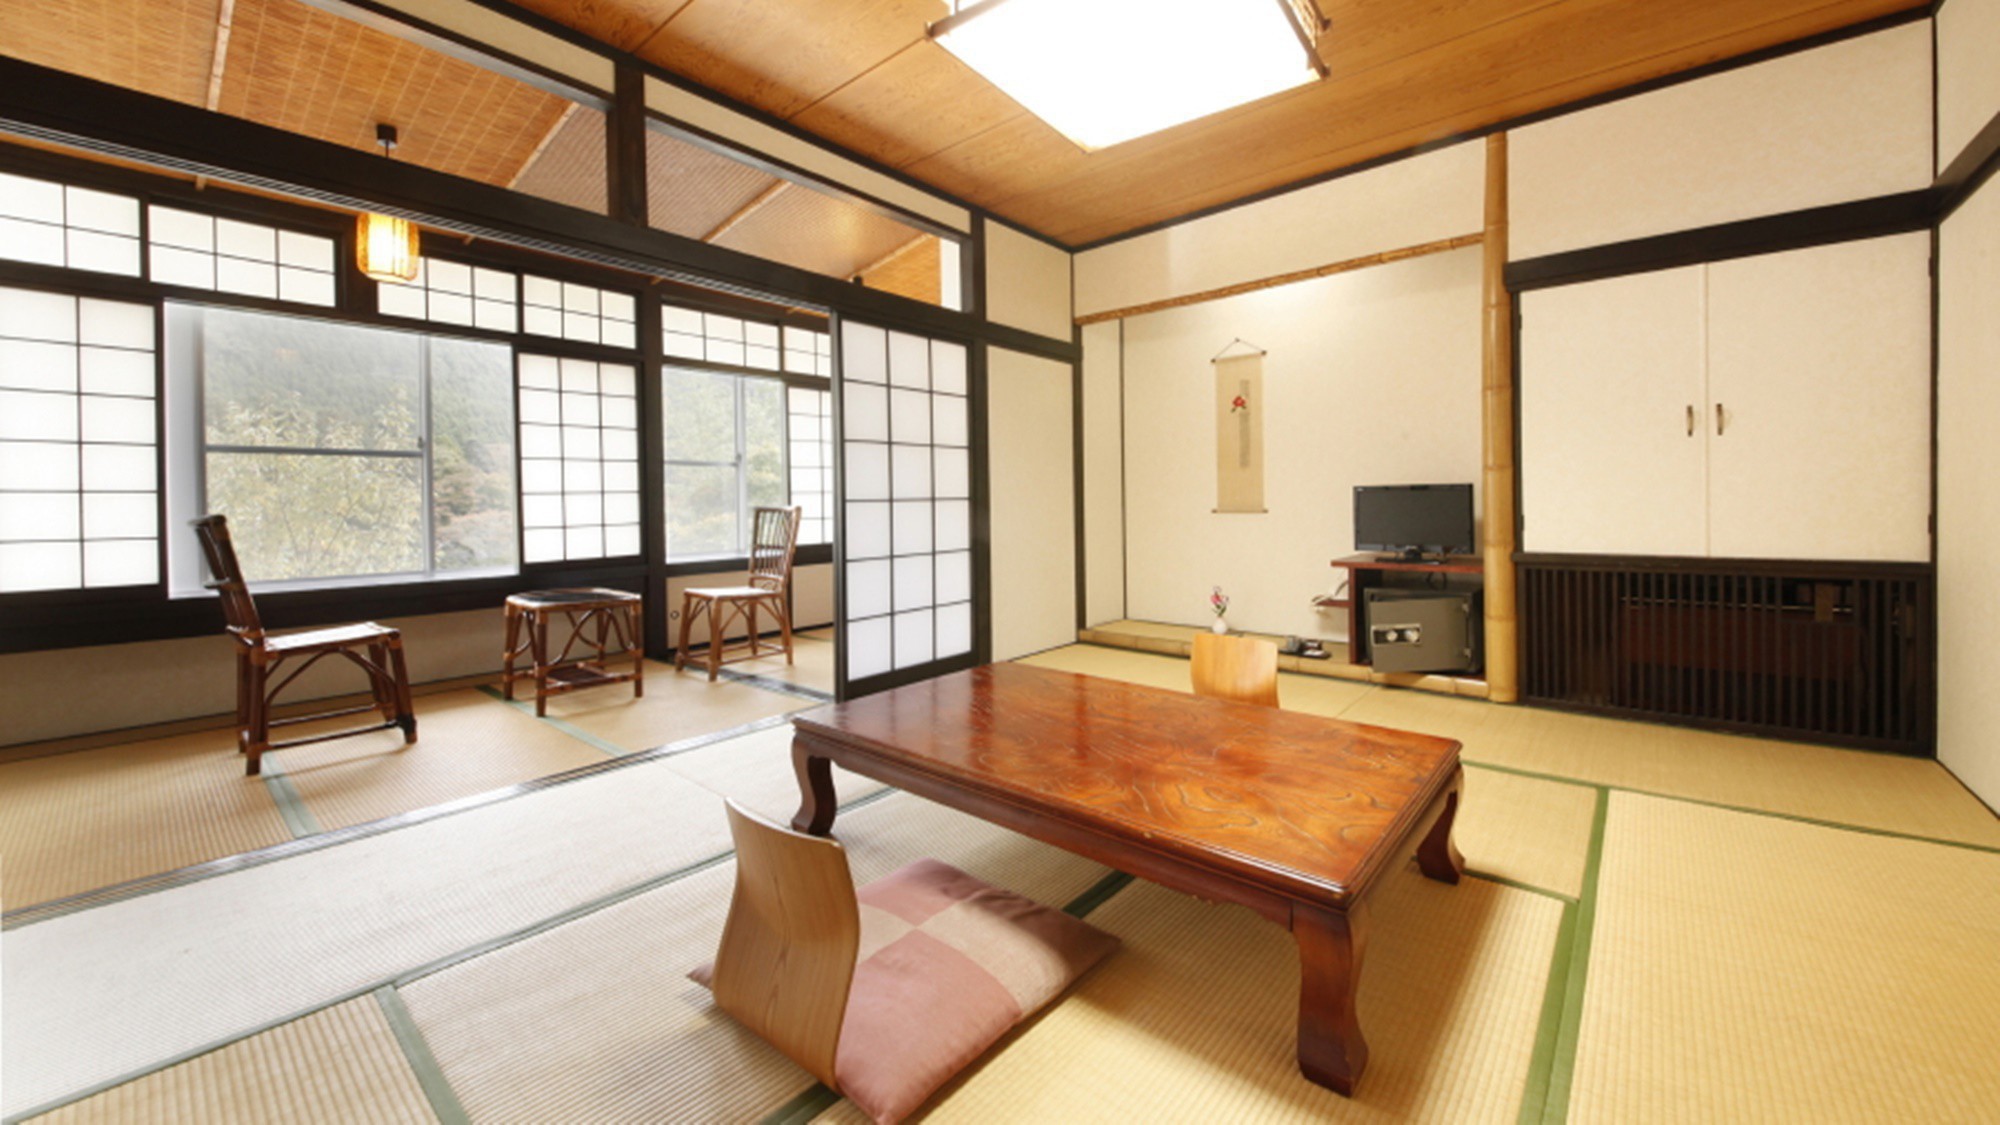 【モダン和室】品のある大人な空間をお楽しみいただける和室のお部屋です。